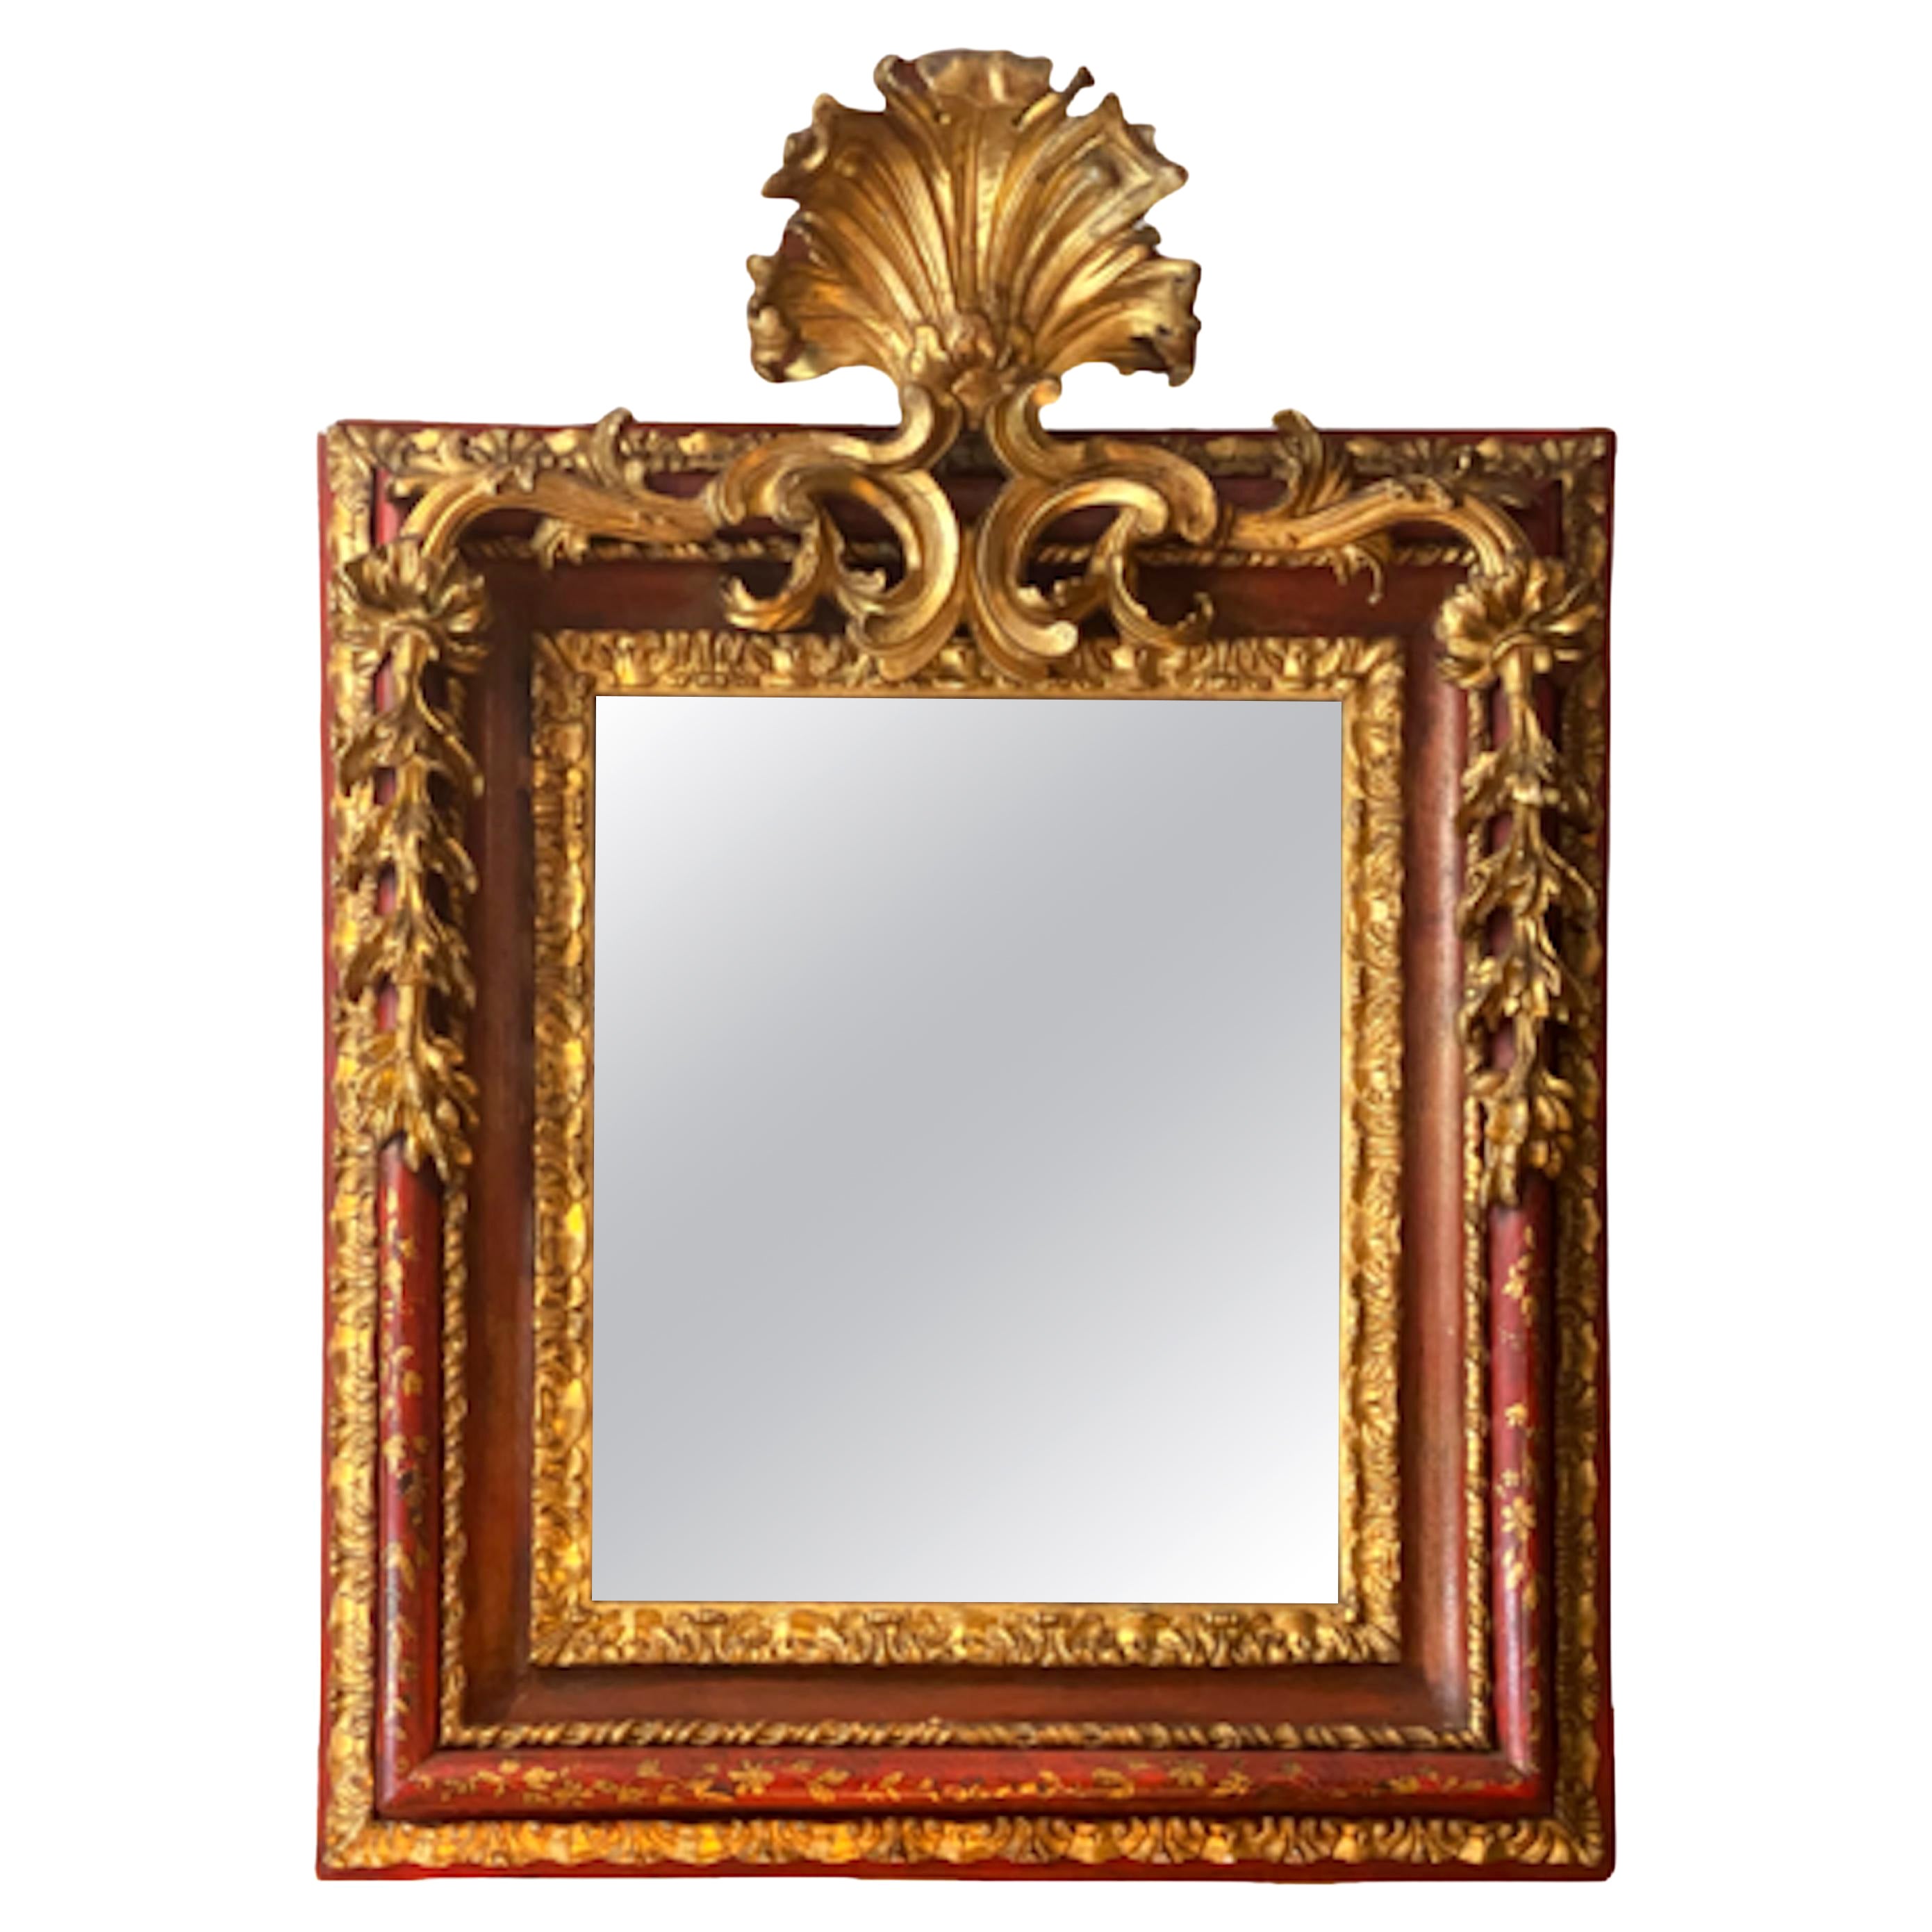 Rare miroir italien de la fin du XVIIe siècle, style baroque, chinoiserie et laque dorée